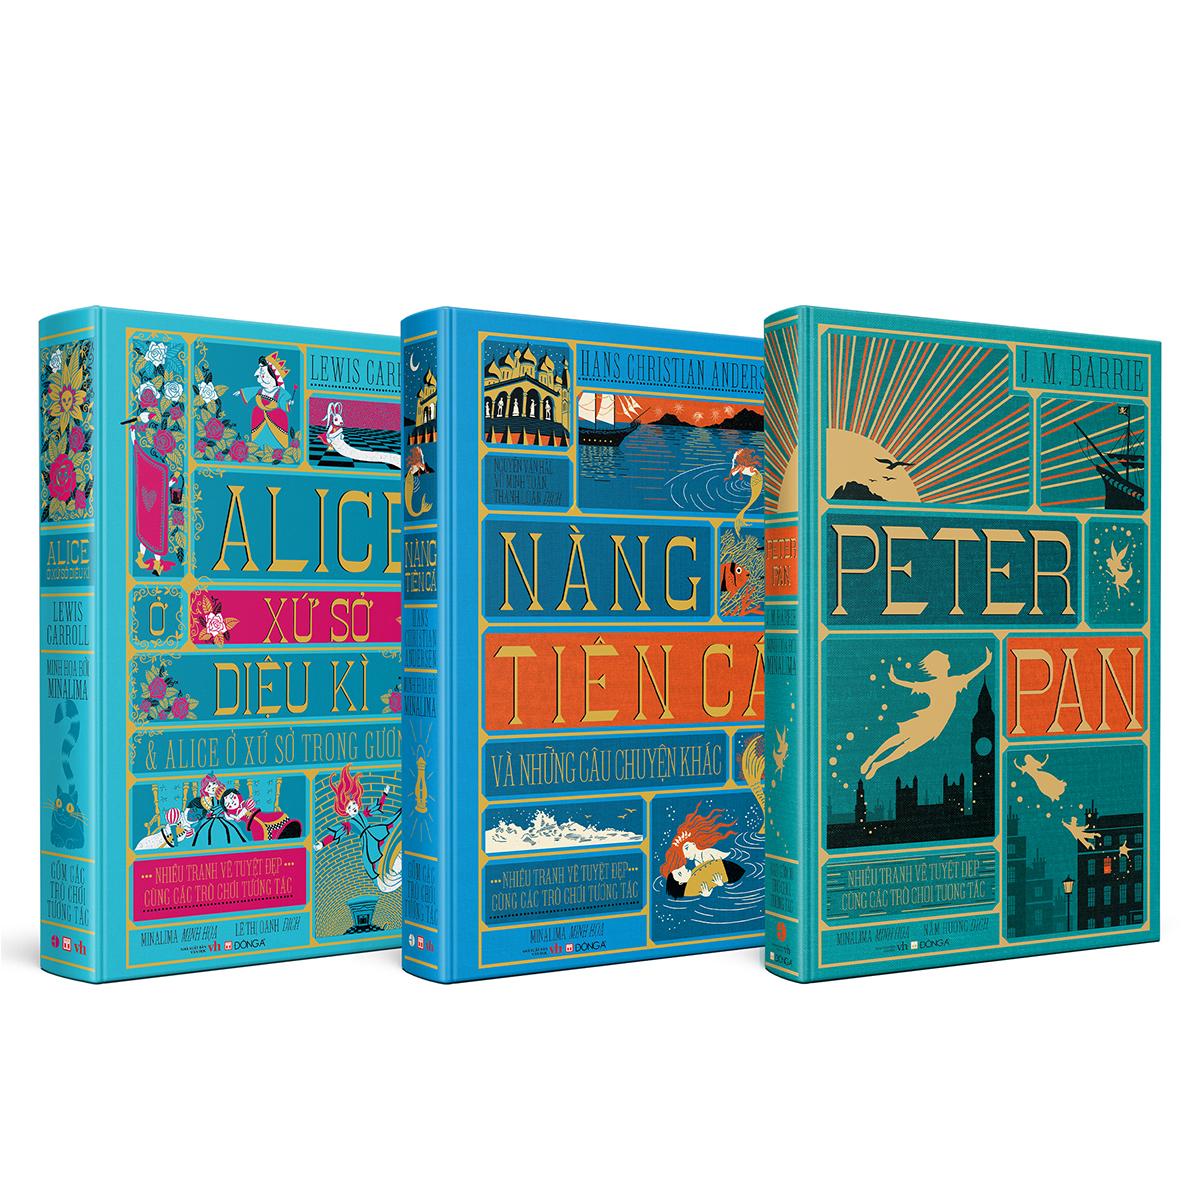 Boxset ba tác phẩm kinh điển dành cho thiếu nhi (Peter Pan, Alice ở xứ sở diệu kì và Alice ở xứ sở trong gương, Nàng tiên cá và những câu chuyện khác)